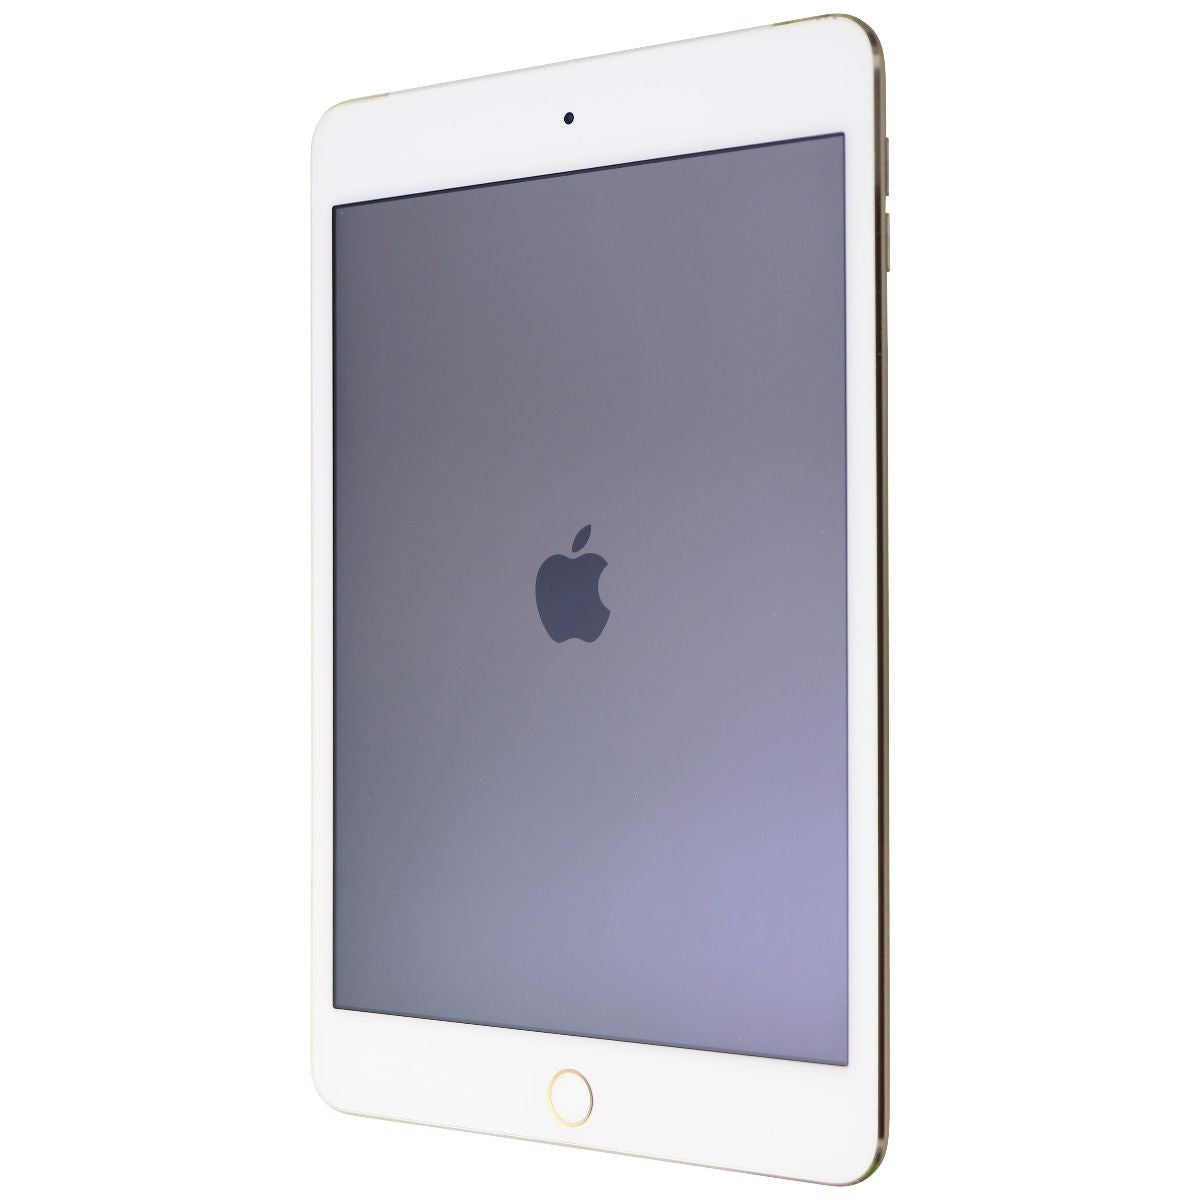 Apple iPad mini 4th Gen (7.9-inch) Tablet (A1550) Unlocked - 128GB / Gold